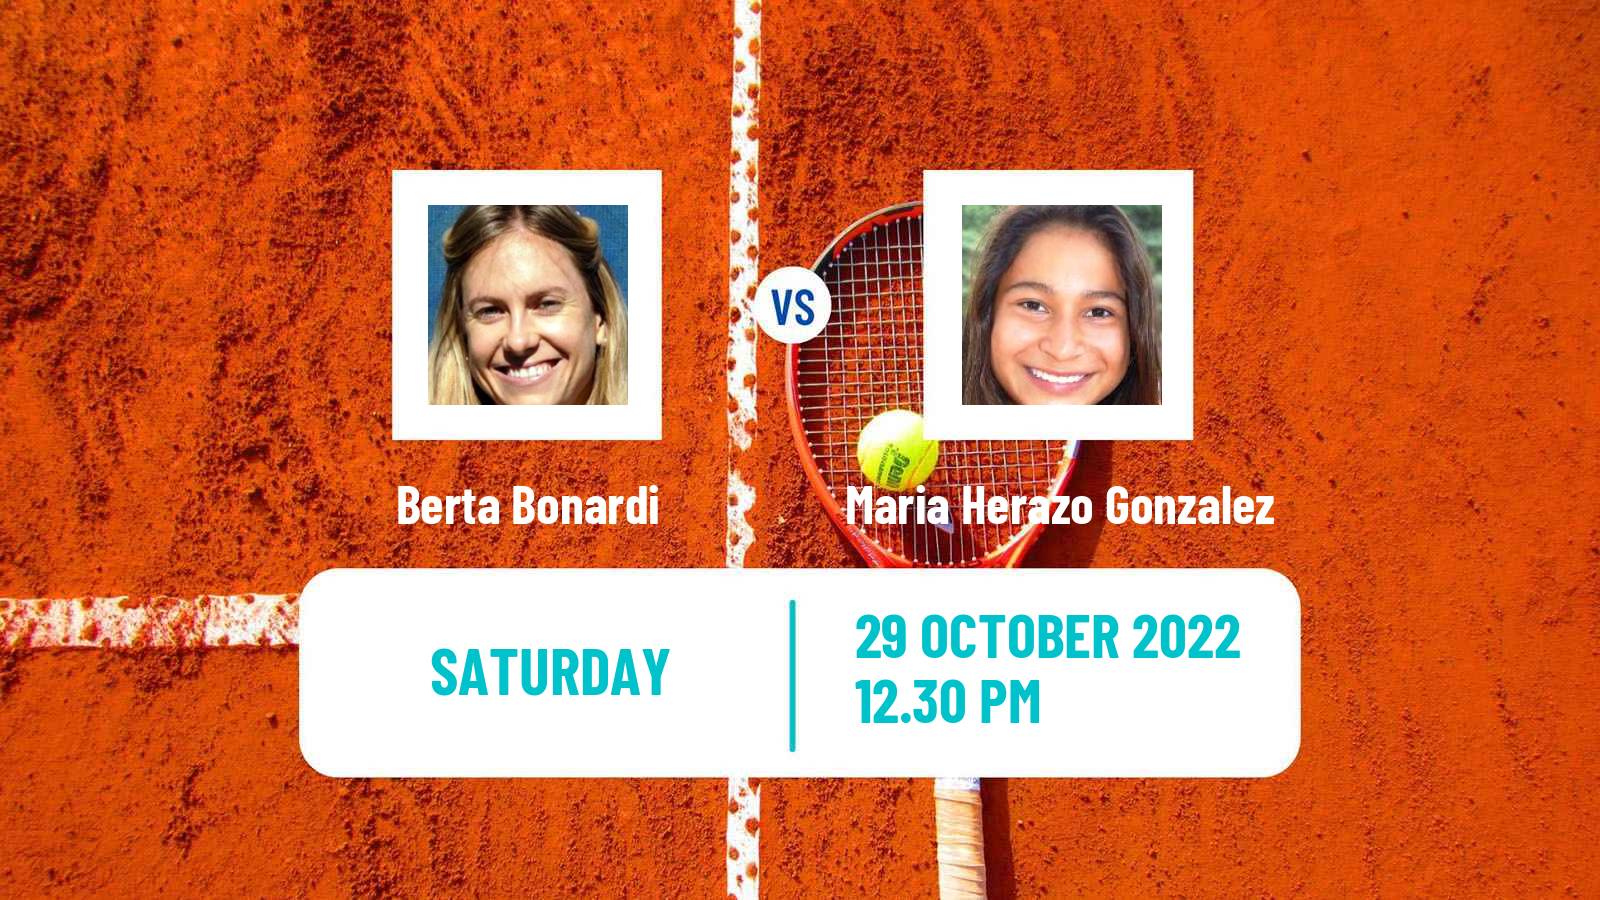 Tennis ITF Tournaments Berta Bonardi - Maria Herazo Gonzalez